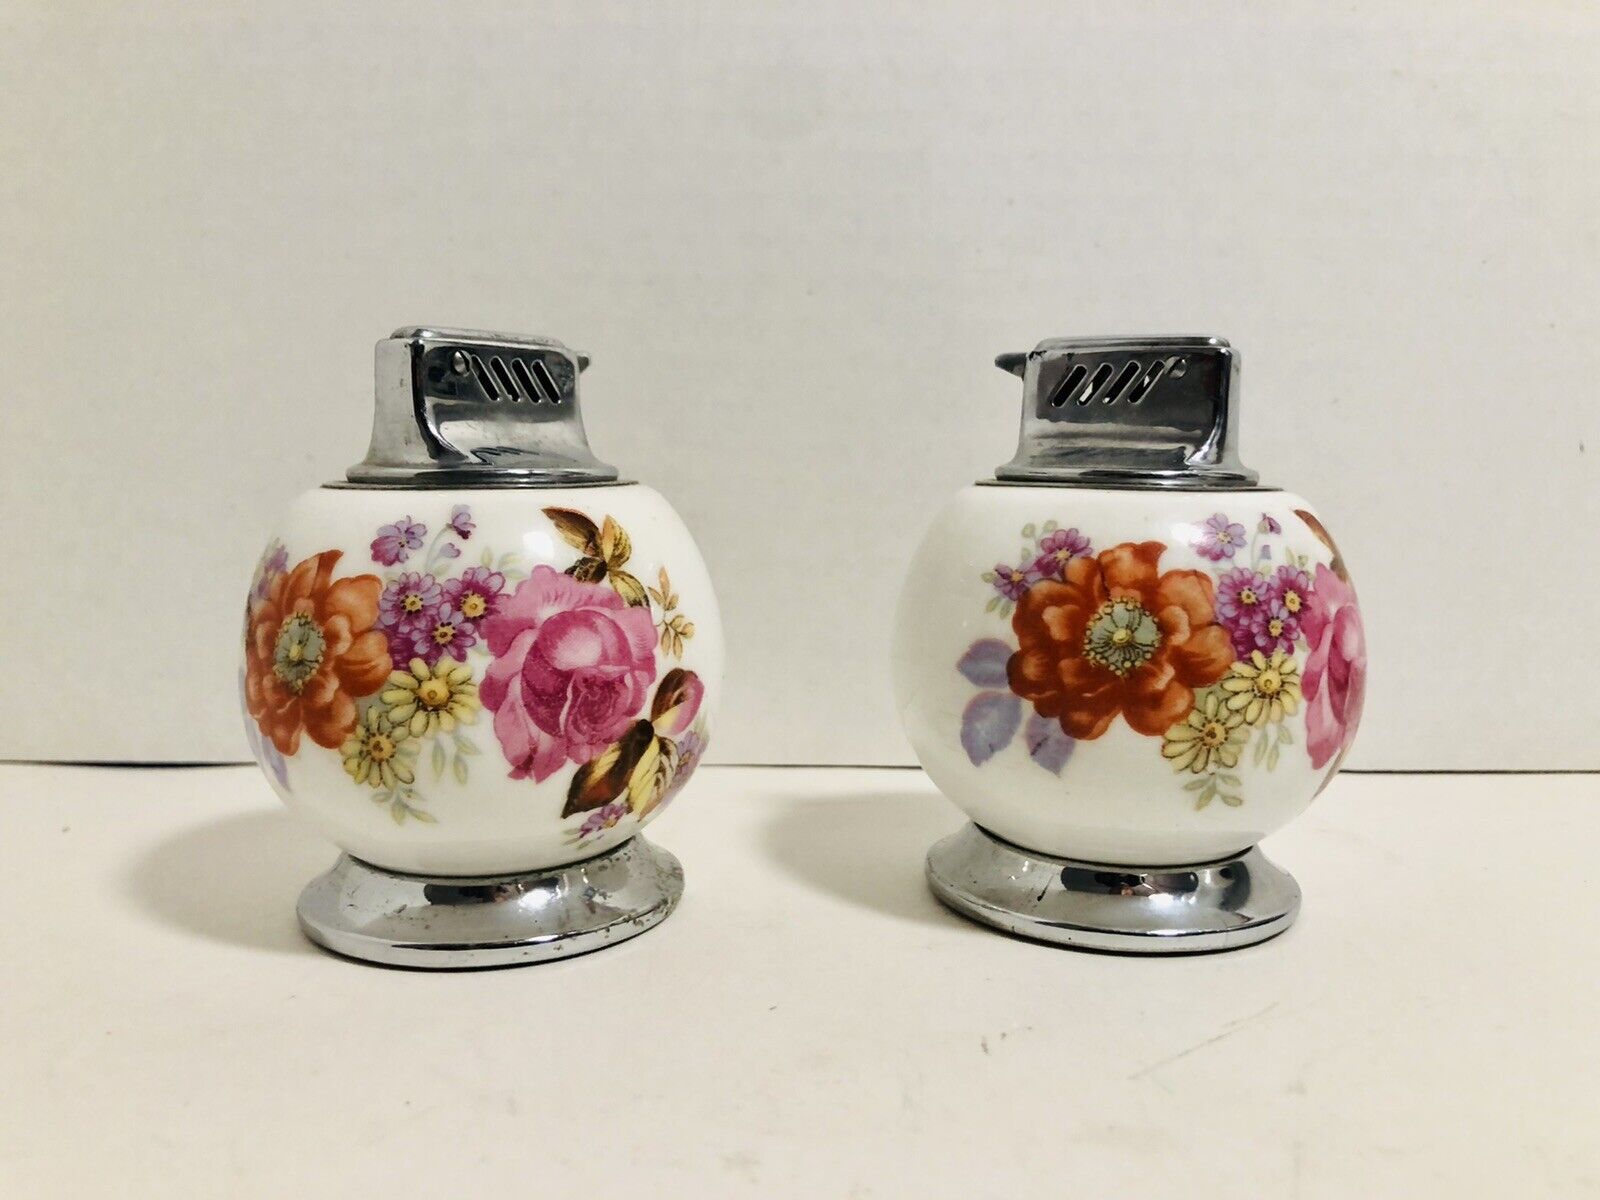 Two Vintage round porcelain floral design table lighter from Japan 3